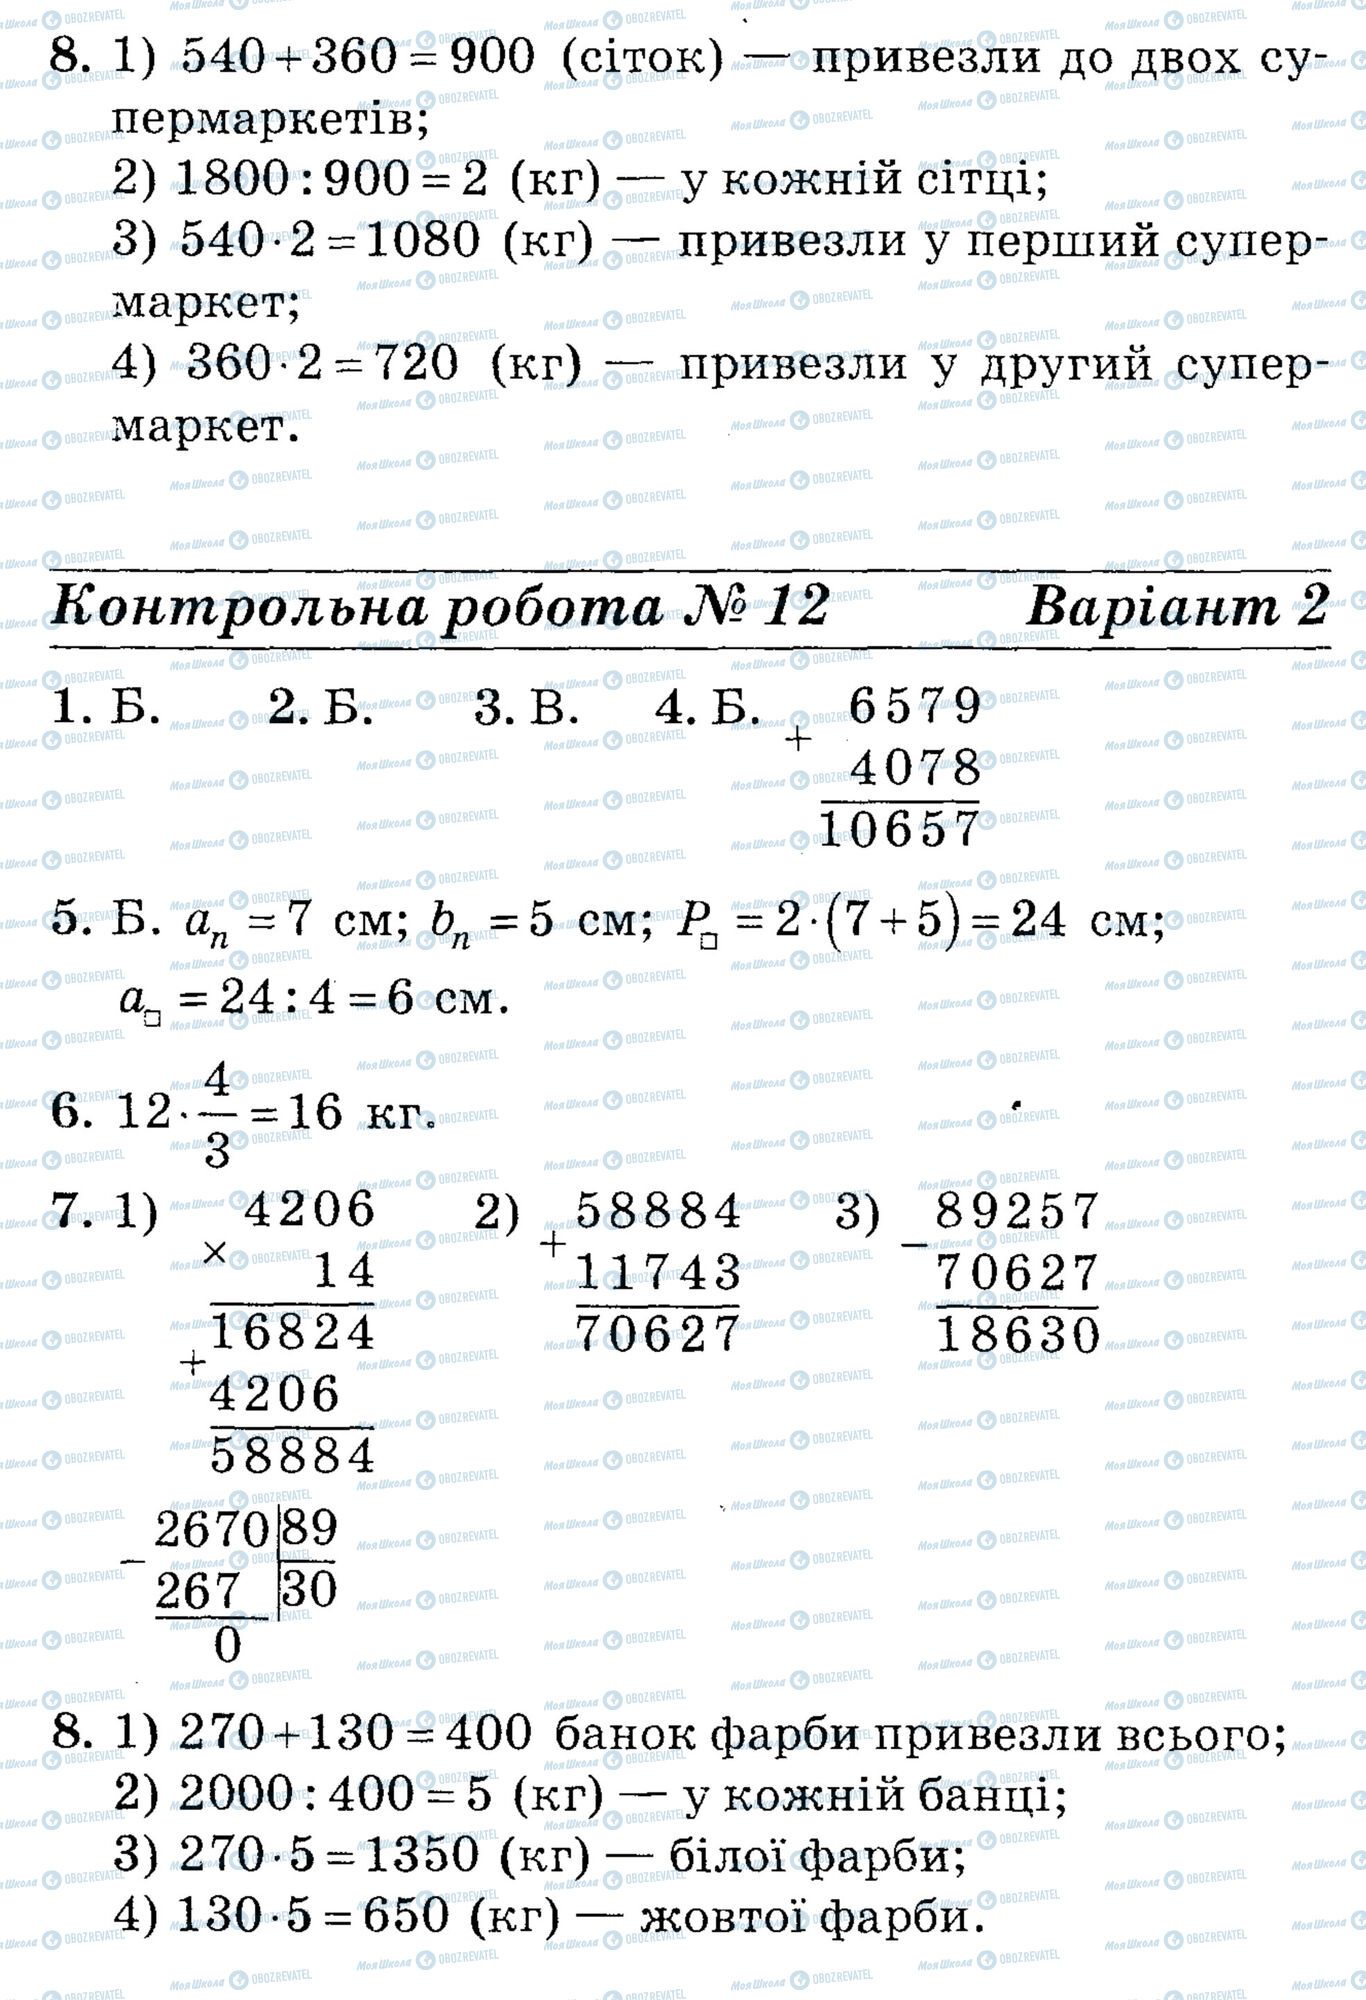 ДПА Математика 4 класс страница math-DPA-2013-4kl-K12-8